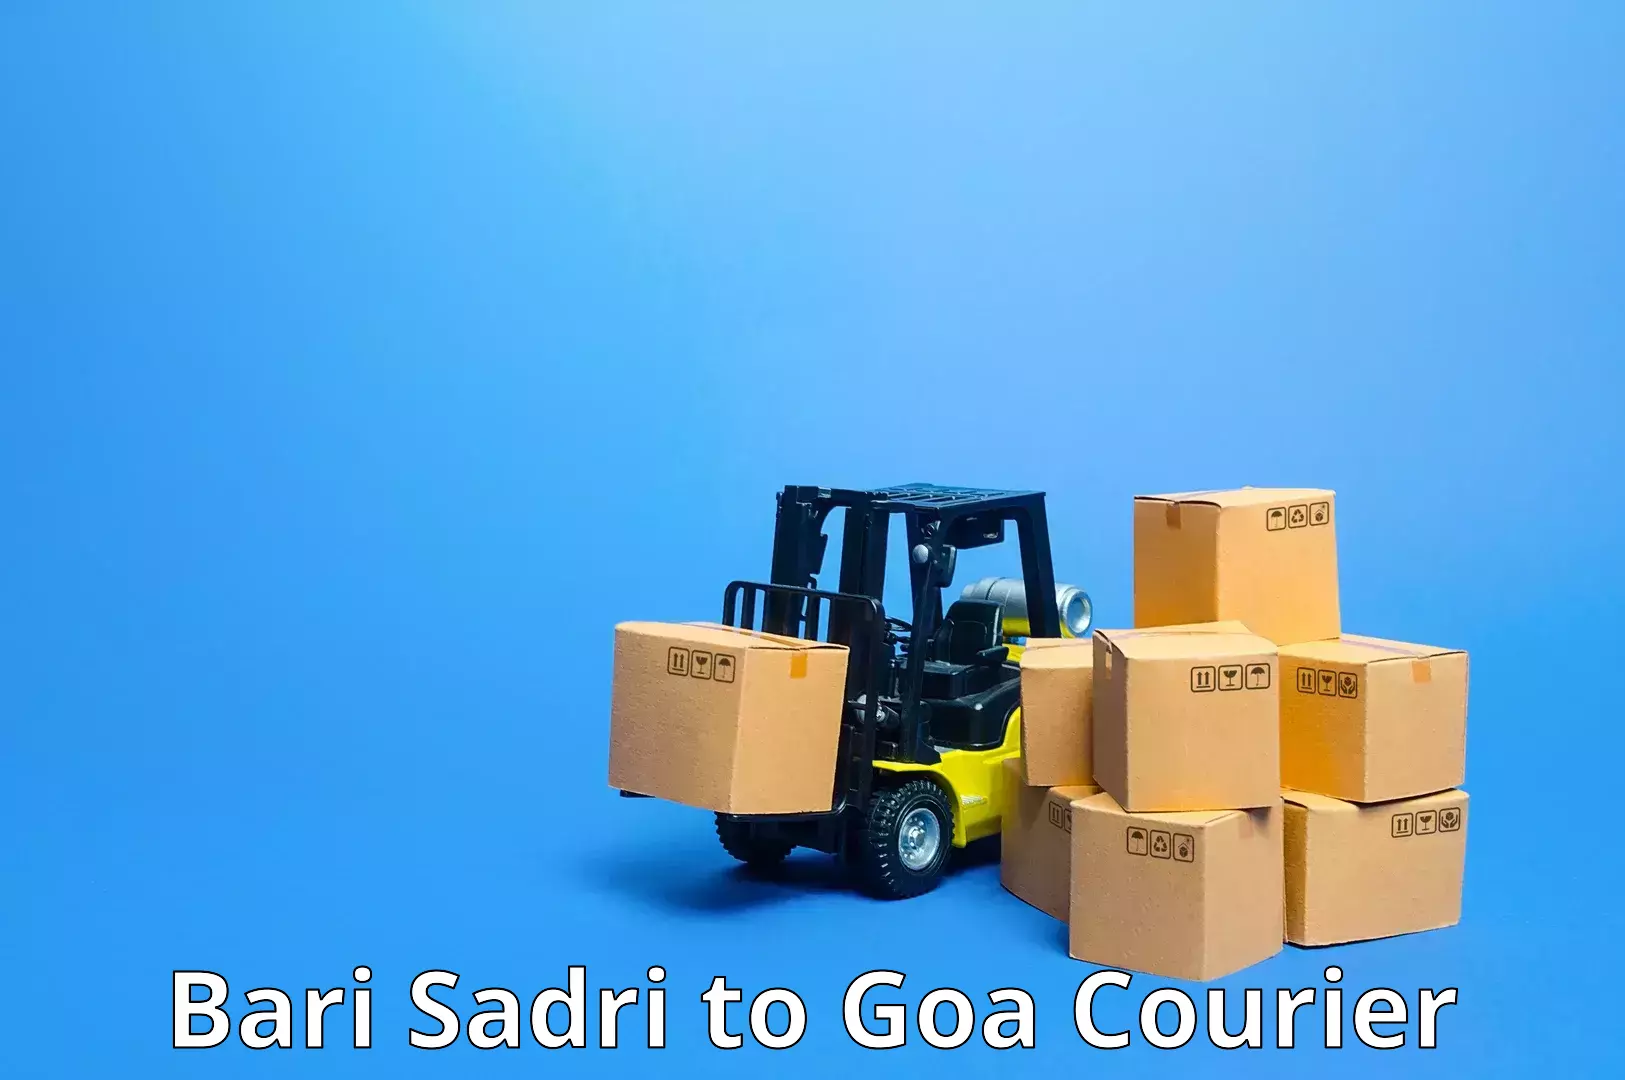 Advanced tracking systems in Bari Sadri to IIT Goa